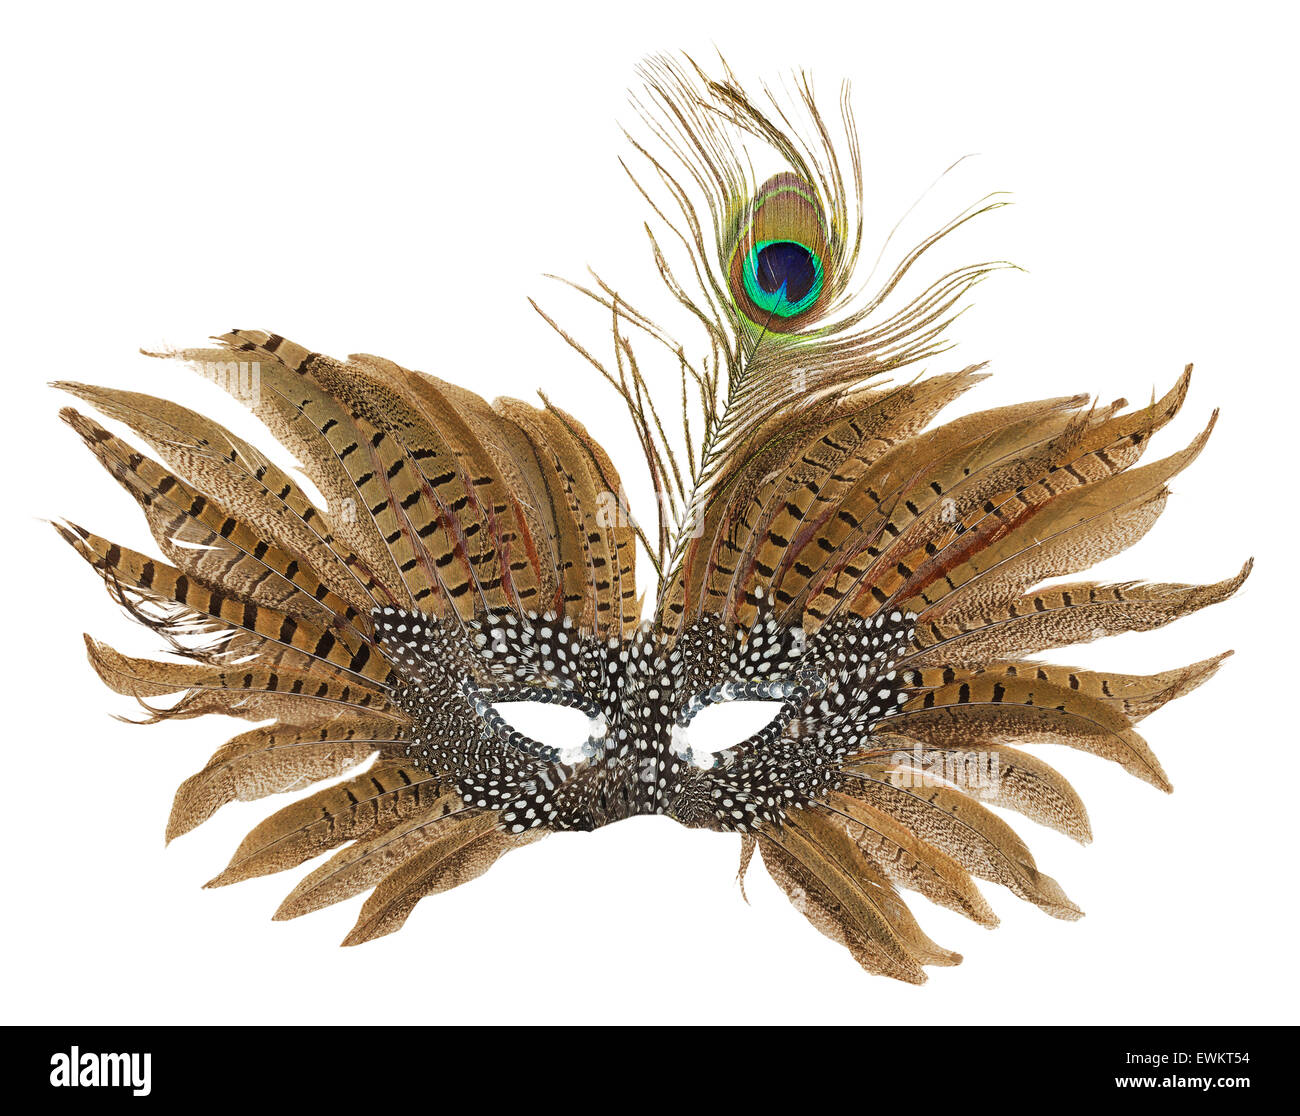 La máscara de carnaval con plumas de pavo real aislado en el fondo blanco. Foto de stock